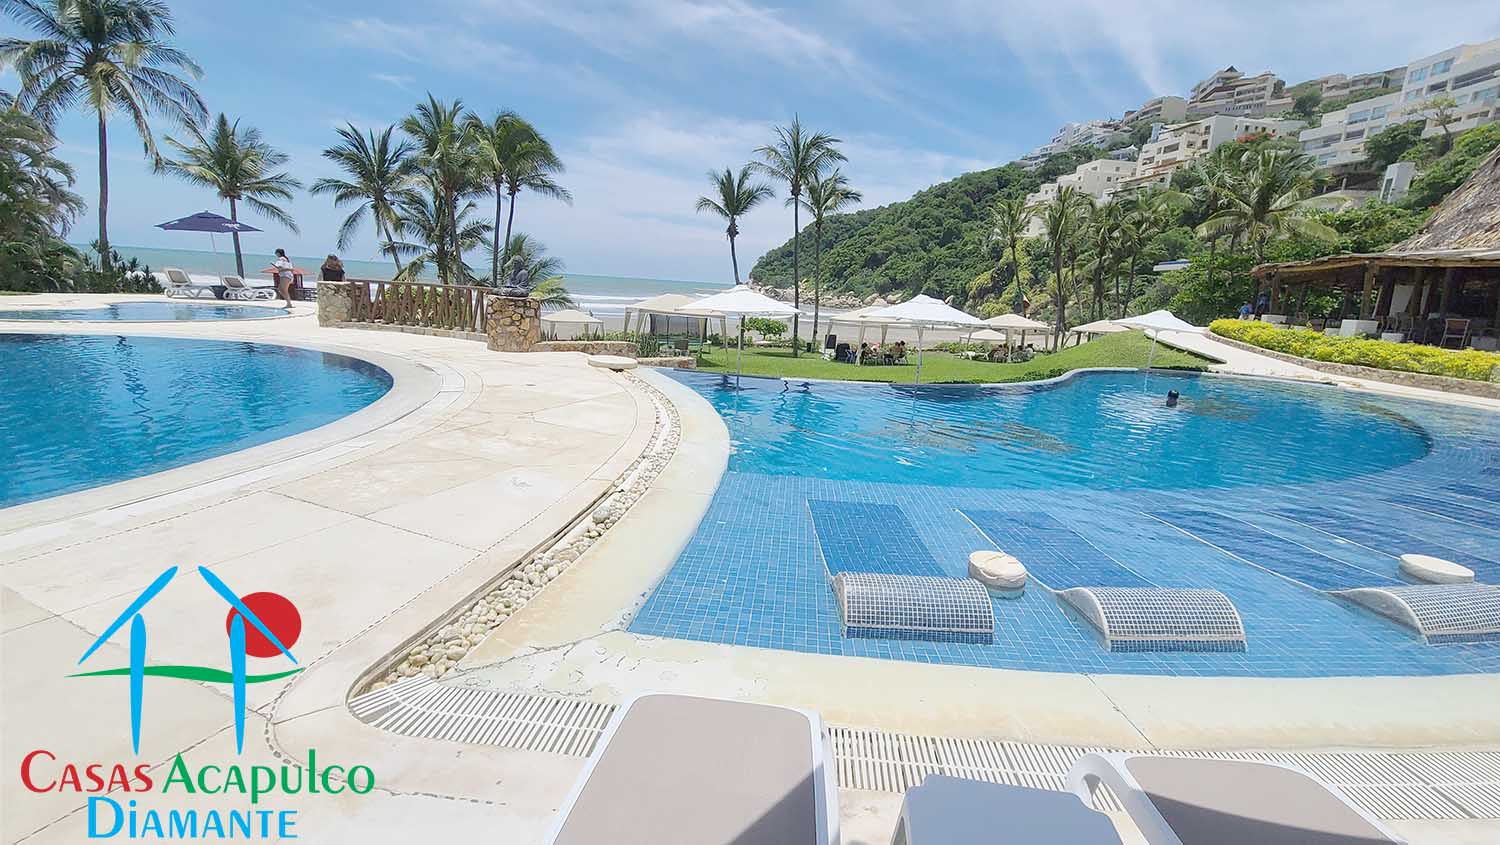 Real Diamante Villa Icaro - Celeste Beach House 4